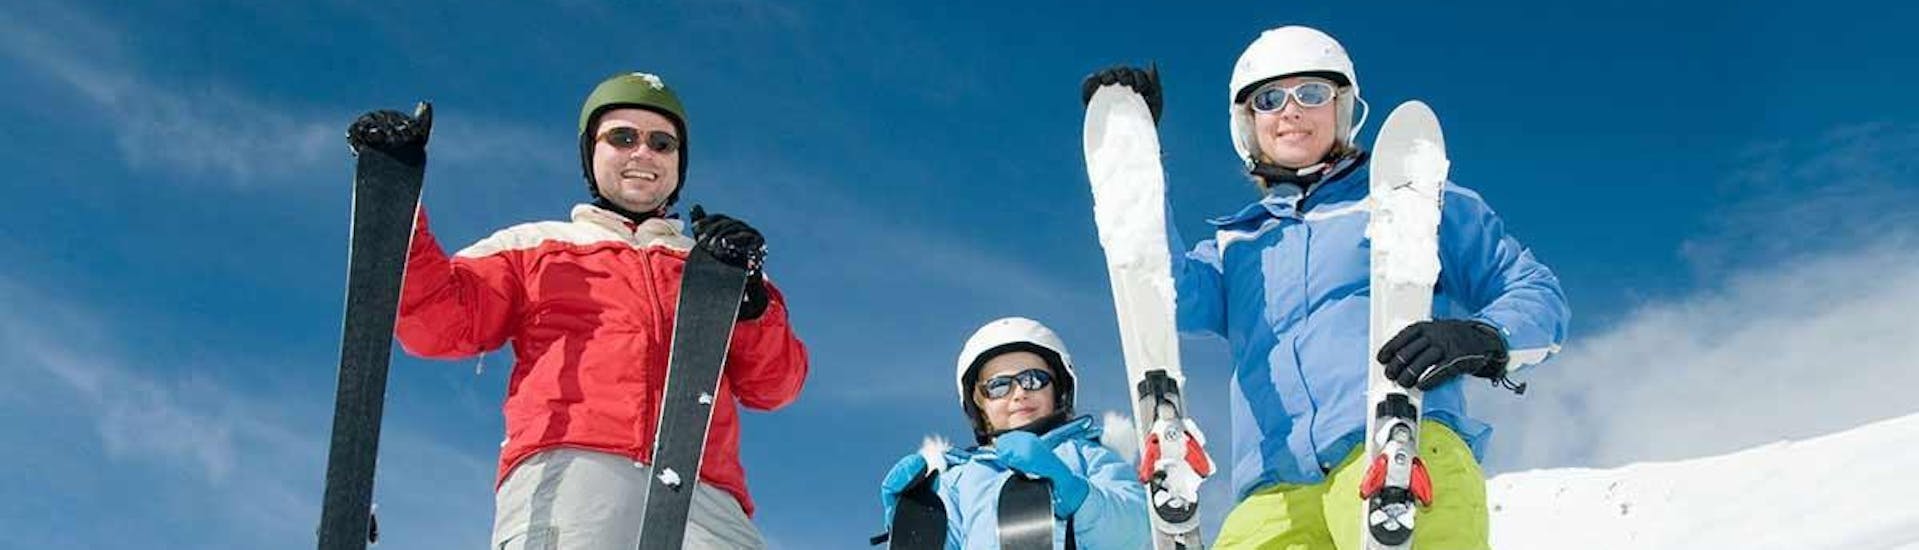 Die Skilehrer der Skischule Snow&Go posieren für ein Gruppenfoto im Schnee und lächeln dabei in die Kamera.